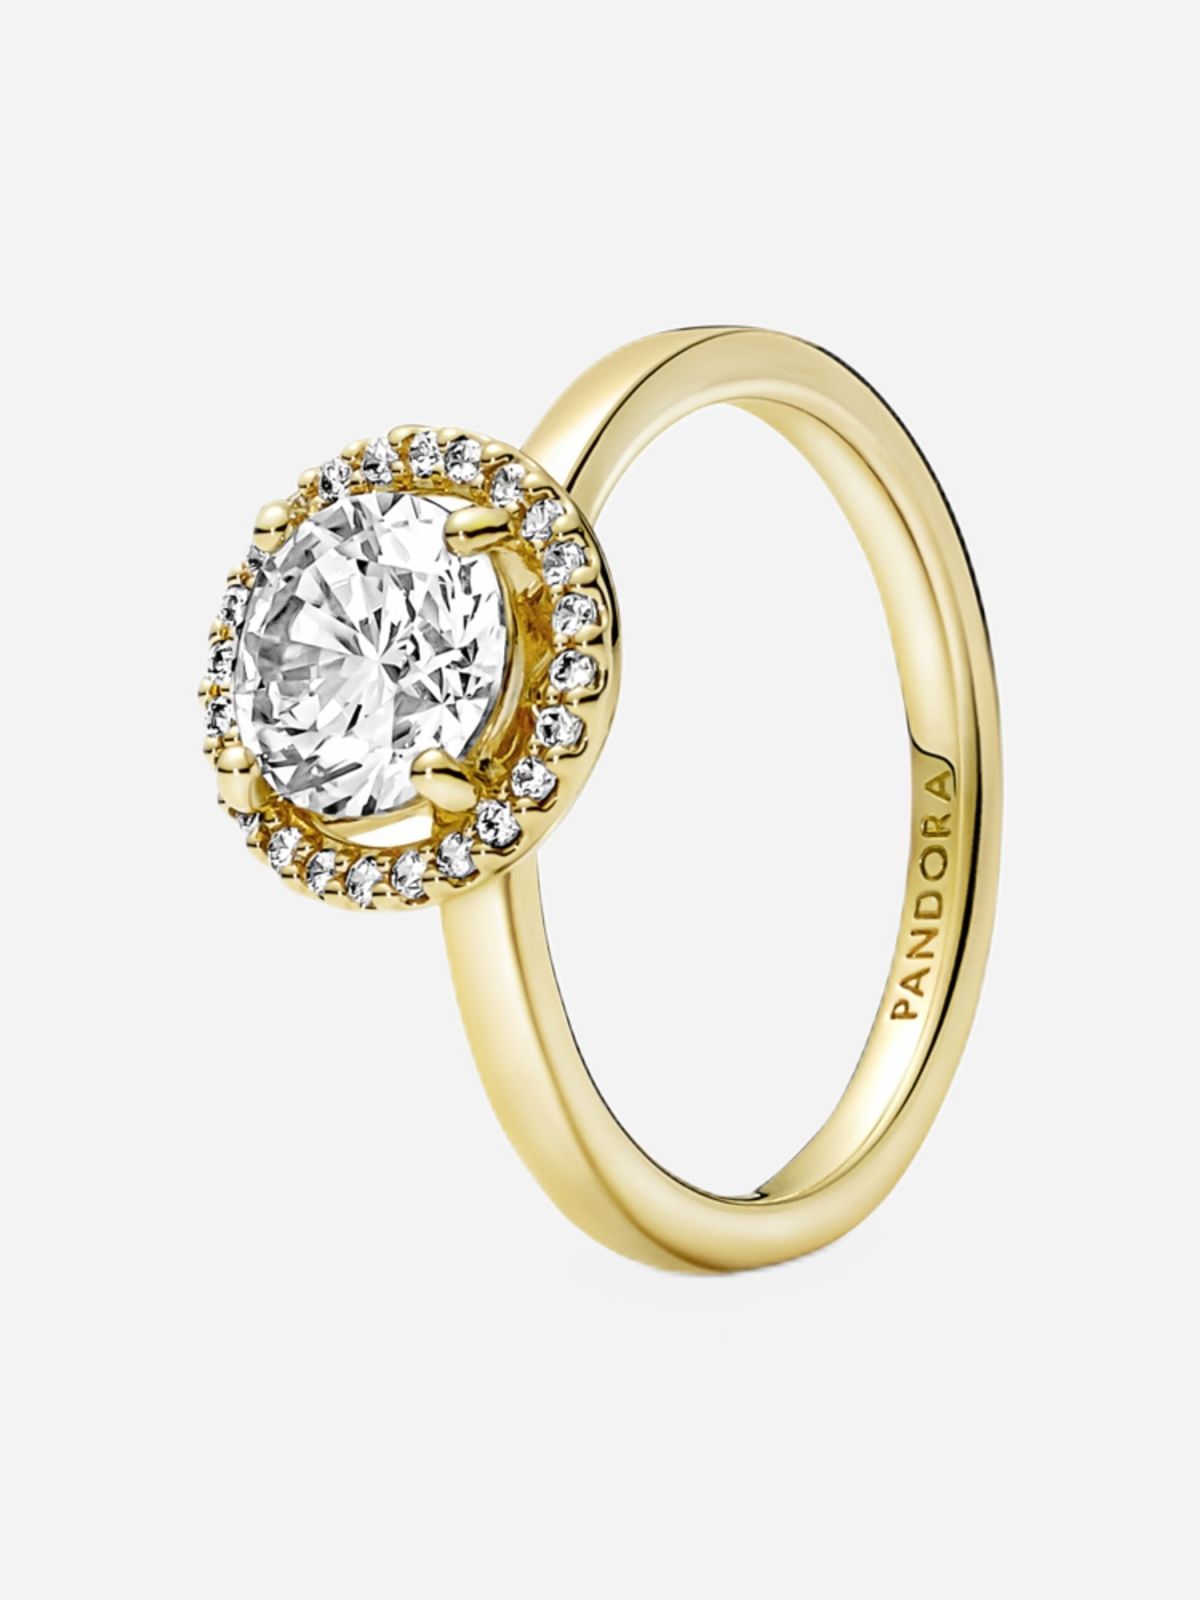  טבעת ציפוי זהב הילה נוצצת של PANDORA